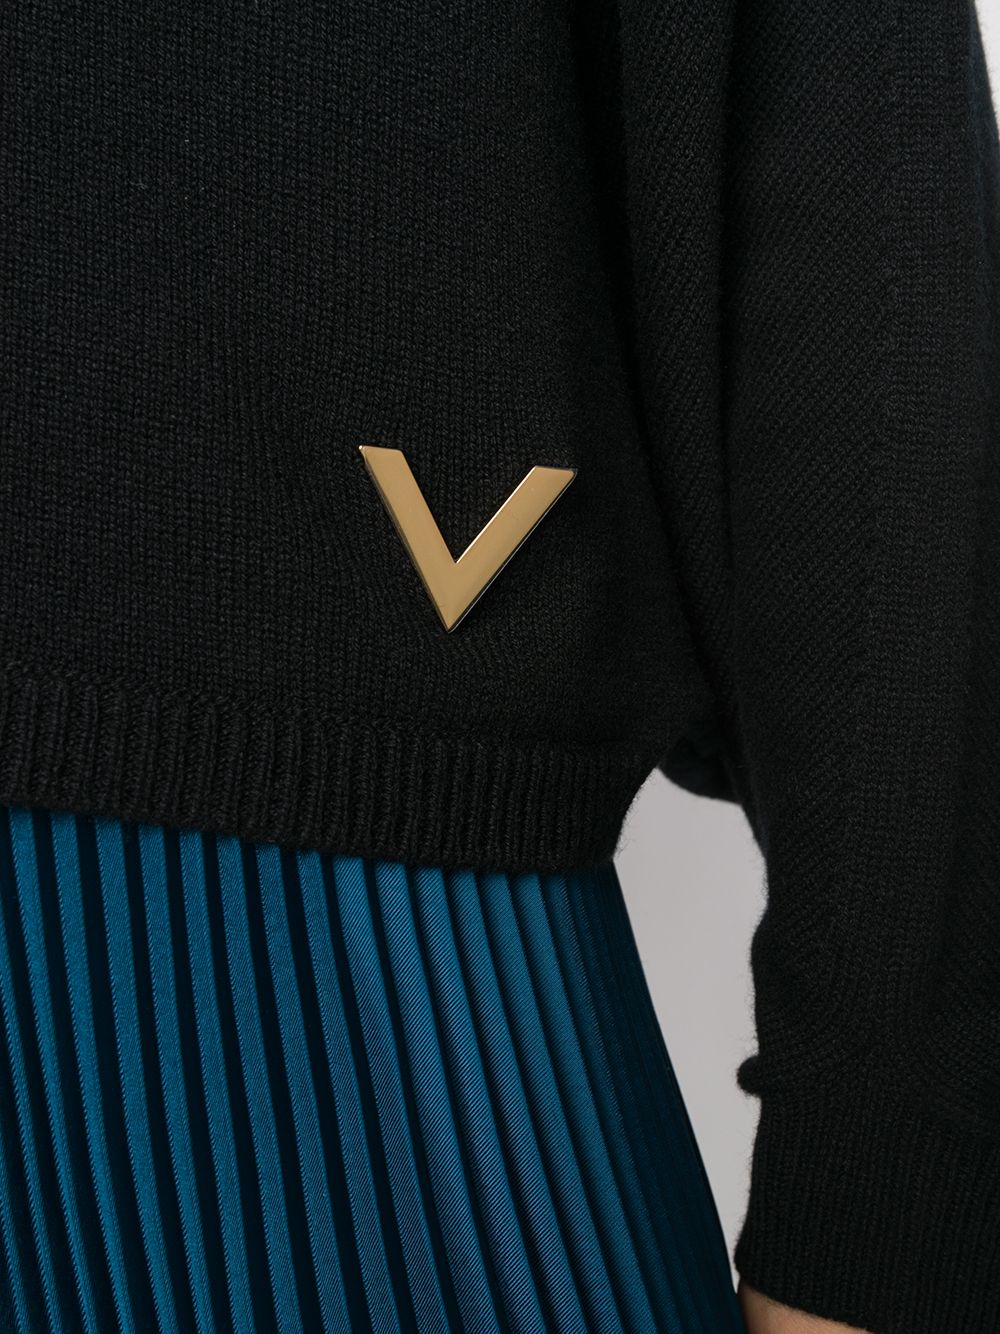 фото Valentino джемпер с v-образным вырезом и логотипом